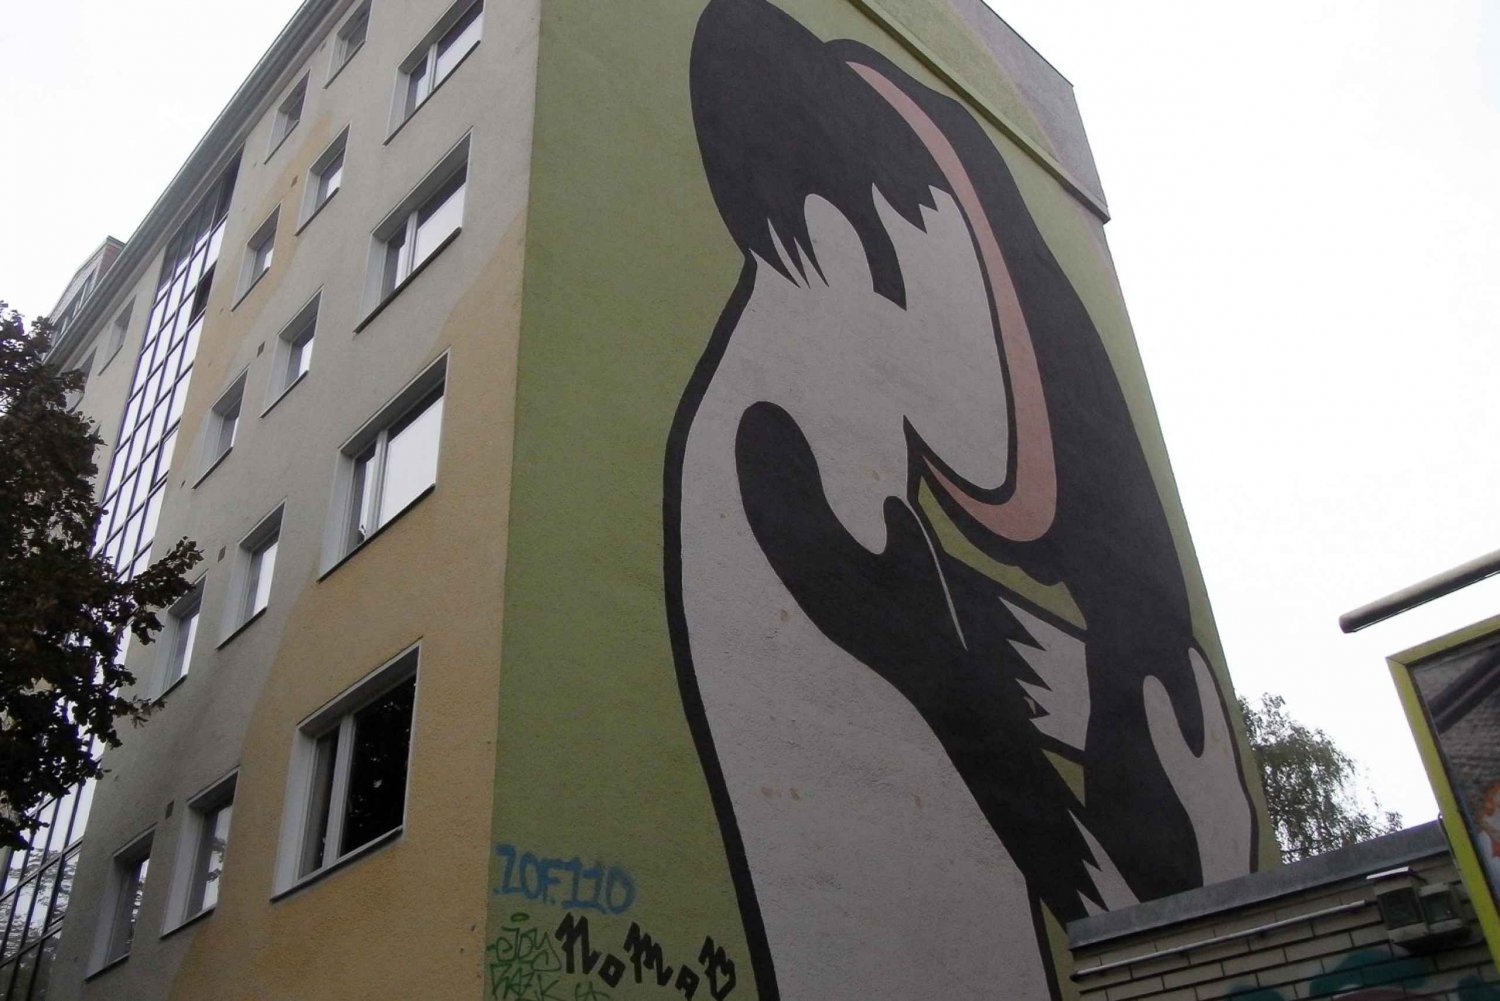 Tour privato Berlino alternativa: murales, graffiti, squat